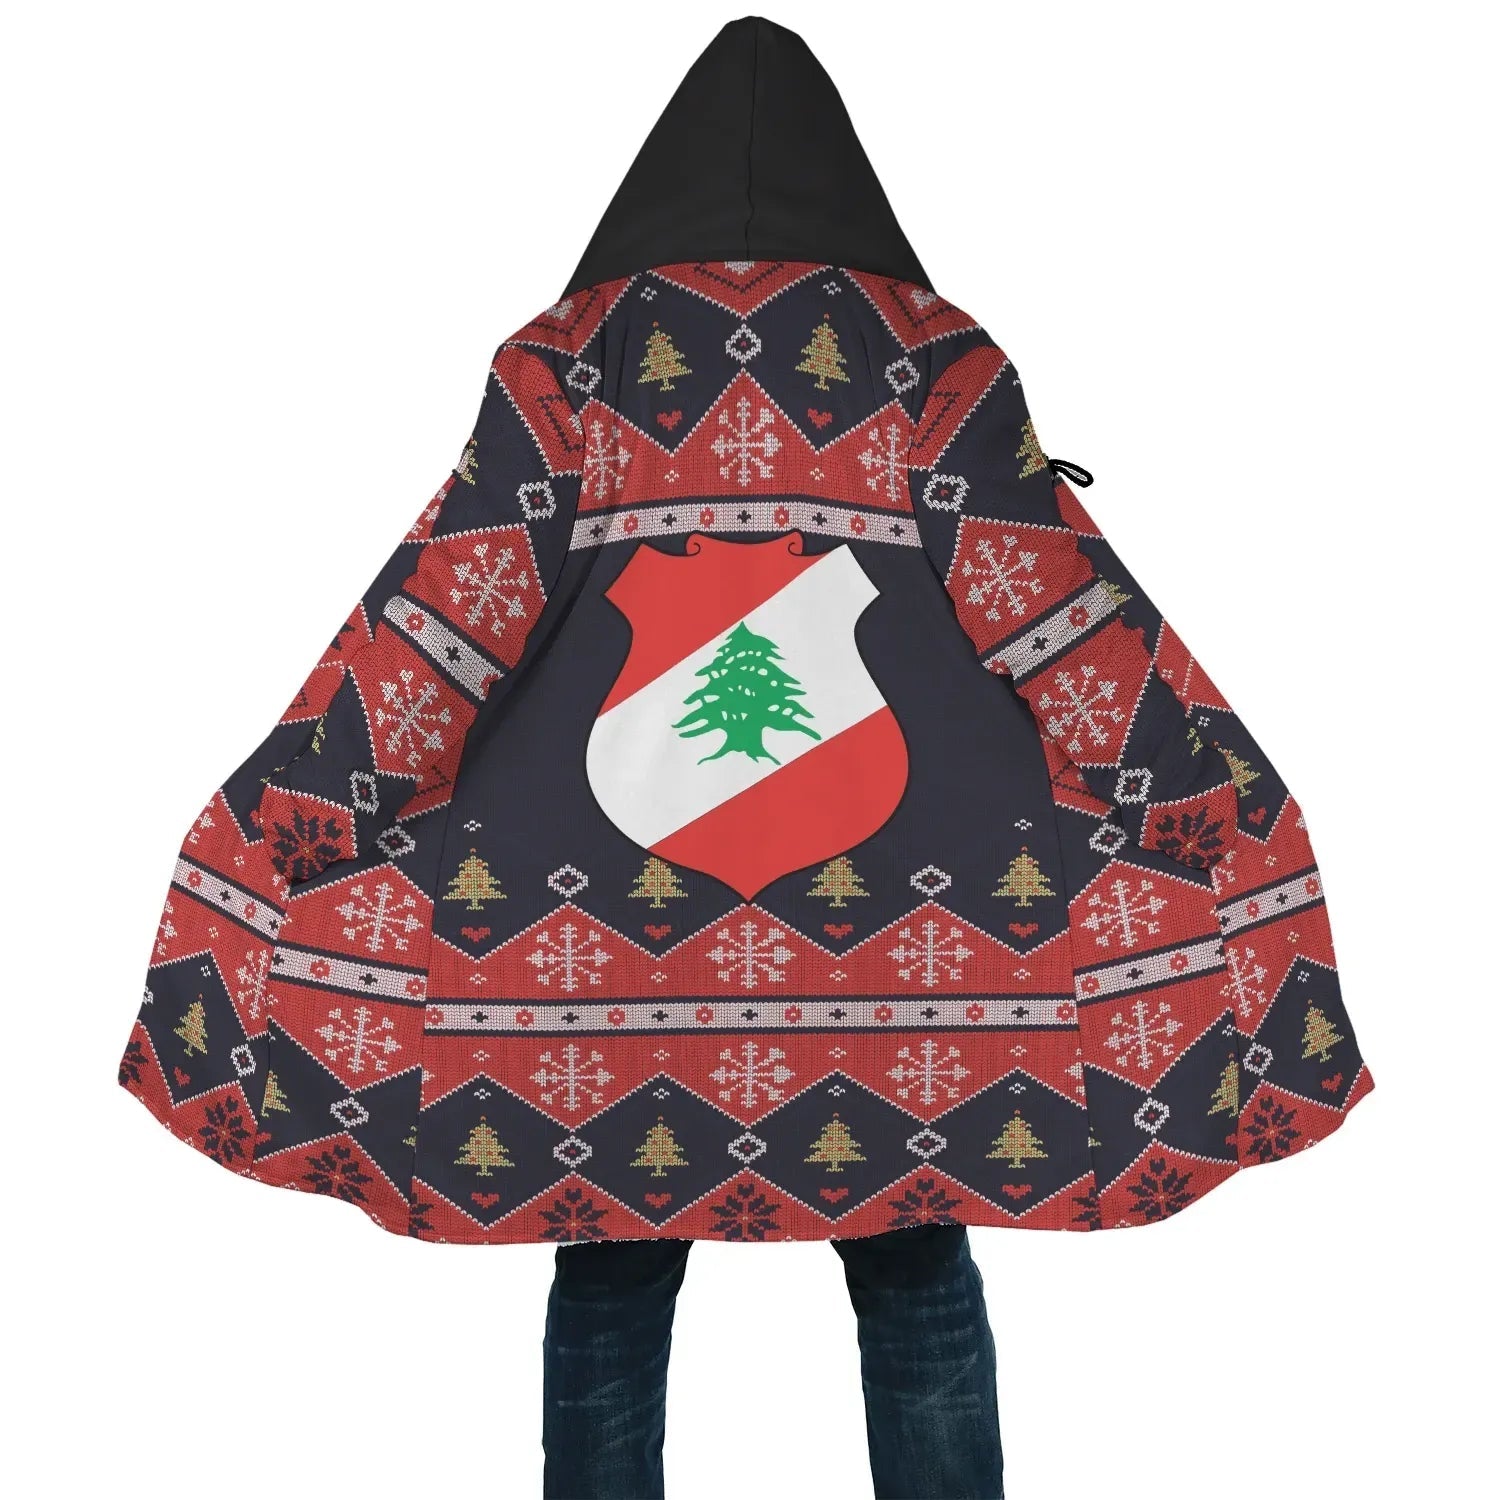 lebanon-christmas-sherpahoodie-santa-claus-ho-ho-ho